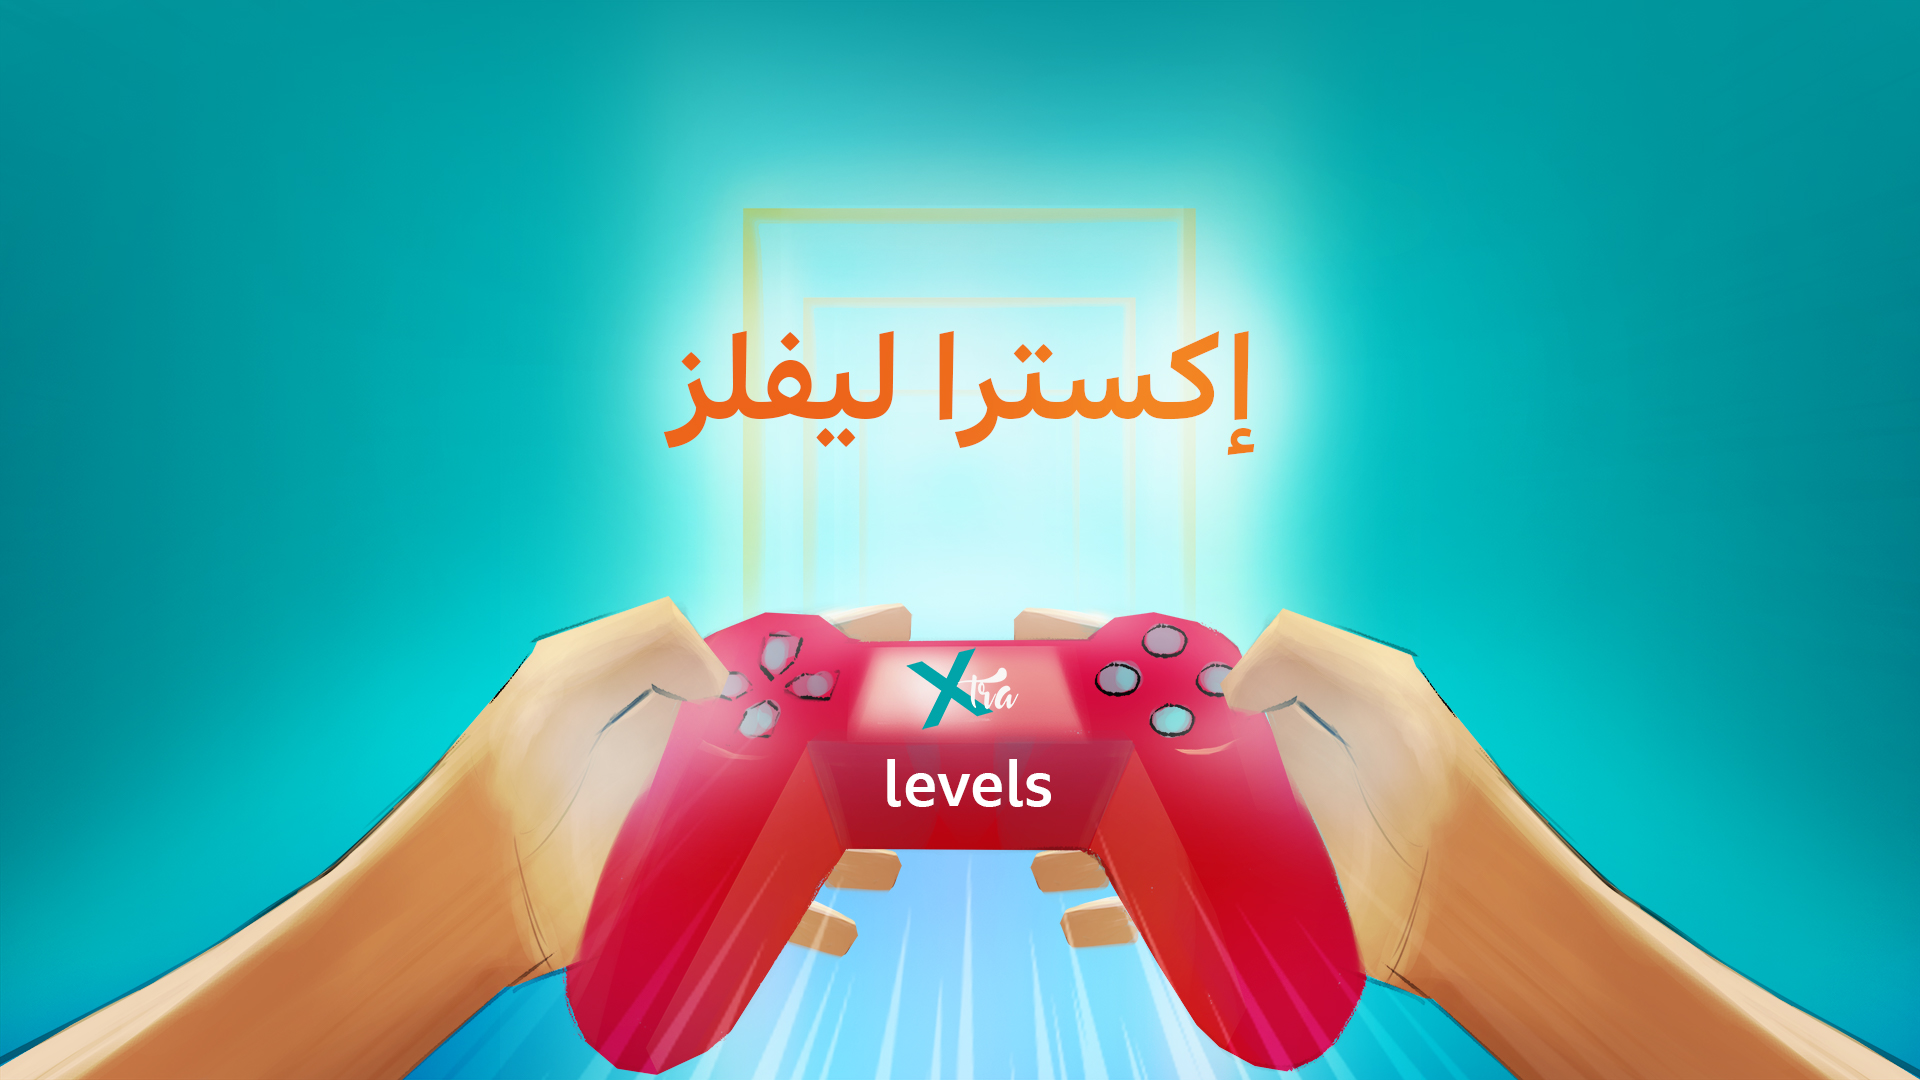 "إكسترا ليفلز": بودكاست الخاص بعالم الألعاب الإلكترونية من بي بي سي نيوز عربي